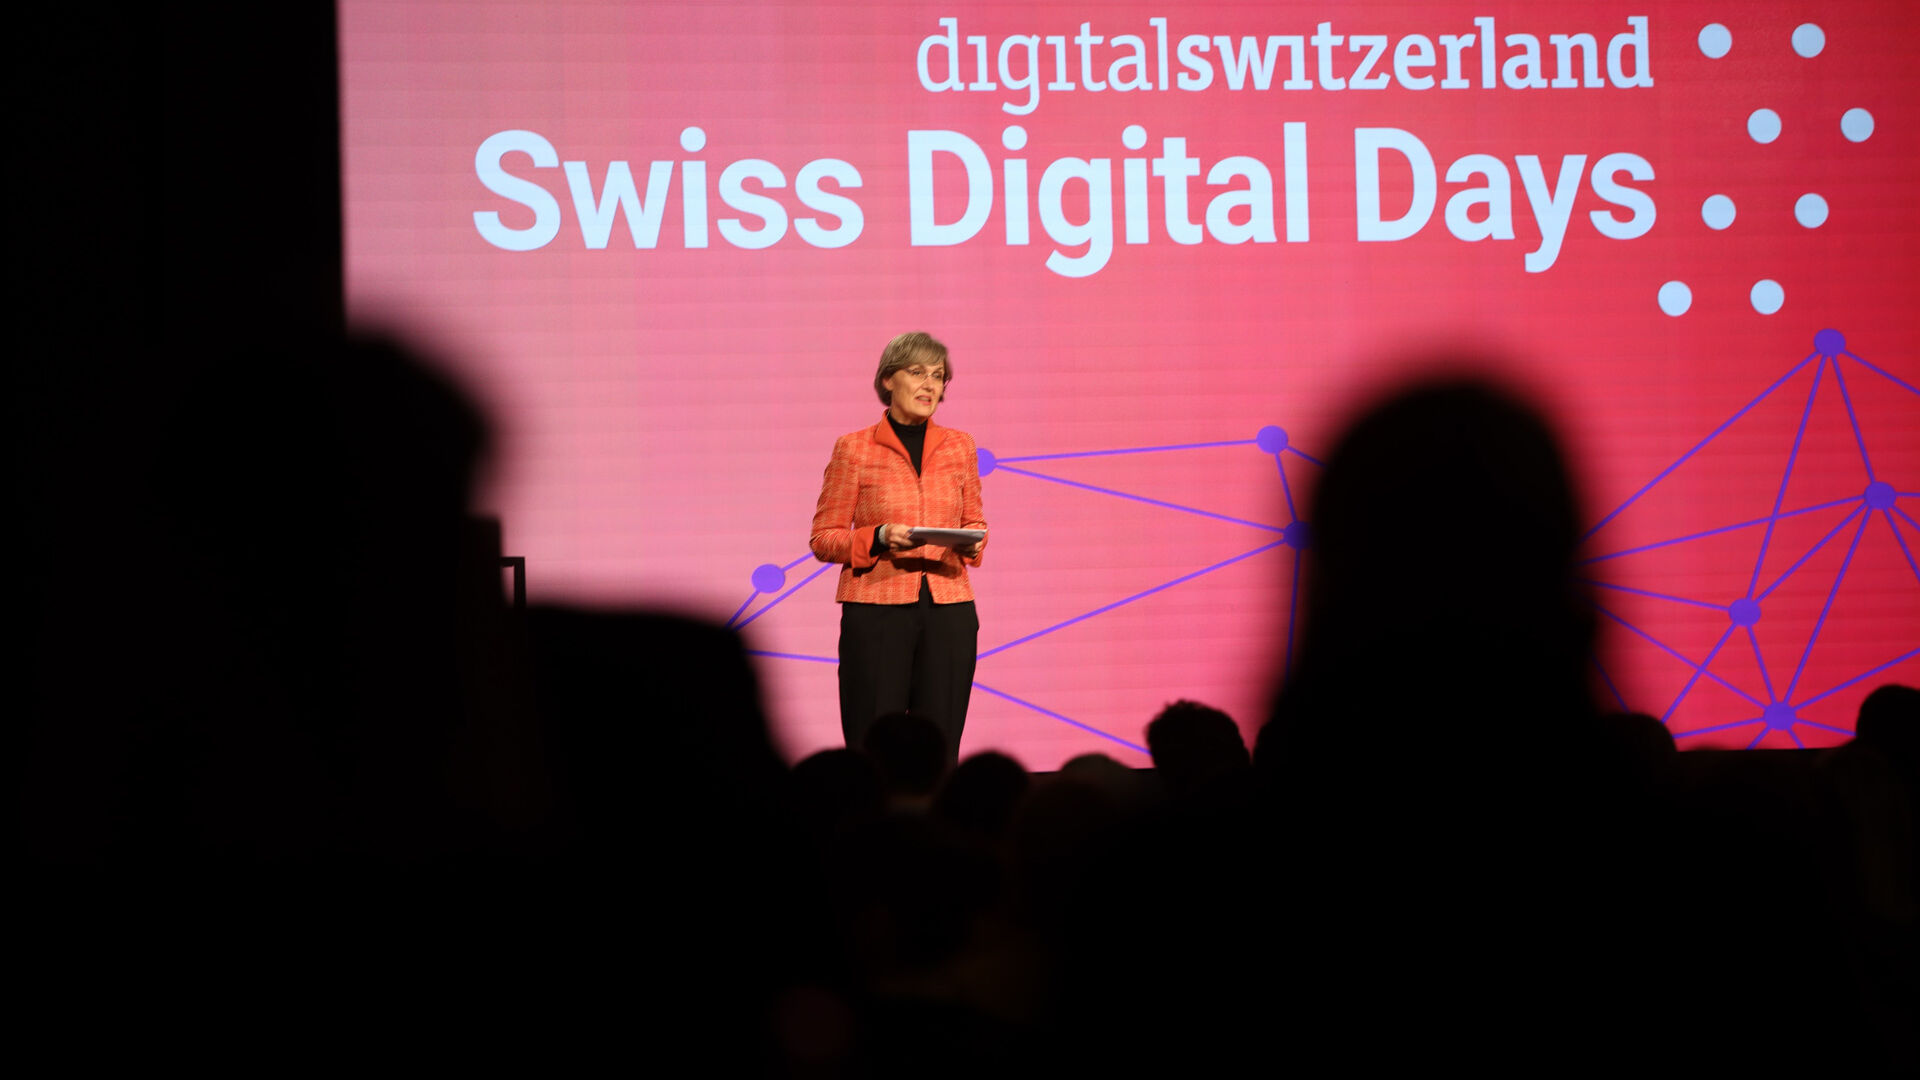 Swiss Digital Days: sự kiện bế mạc "Swiss Digital Days" 2022 tại Freiruum ở Zug (Zug) vào ngày 27 tháng XNUMX